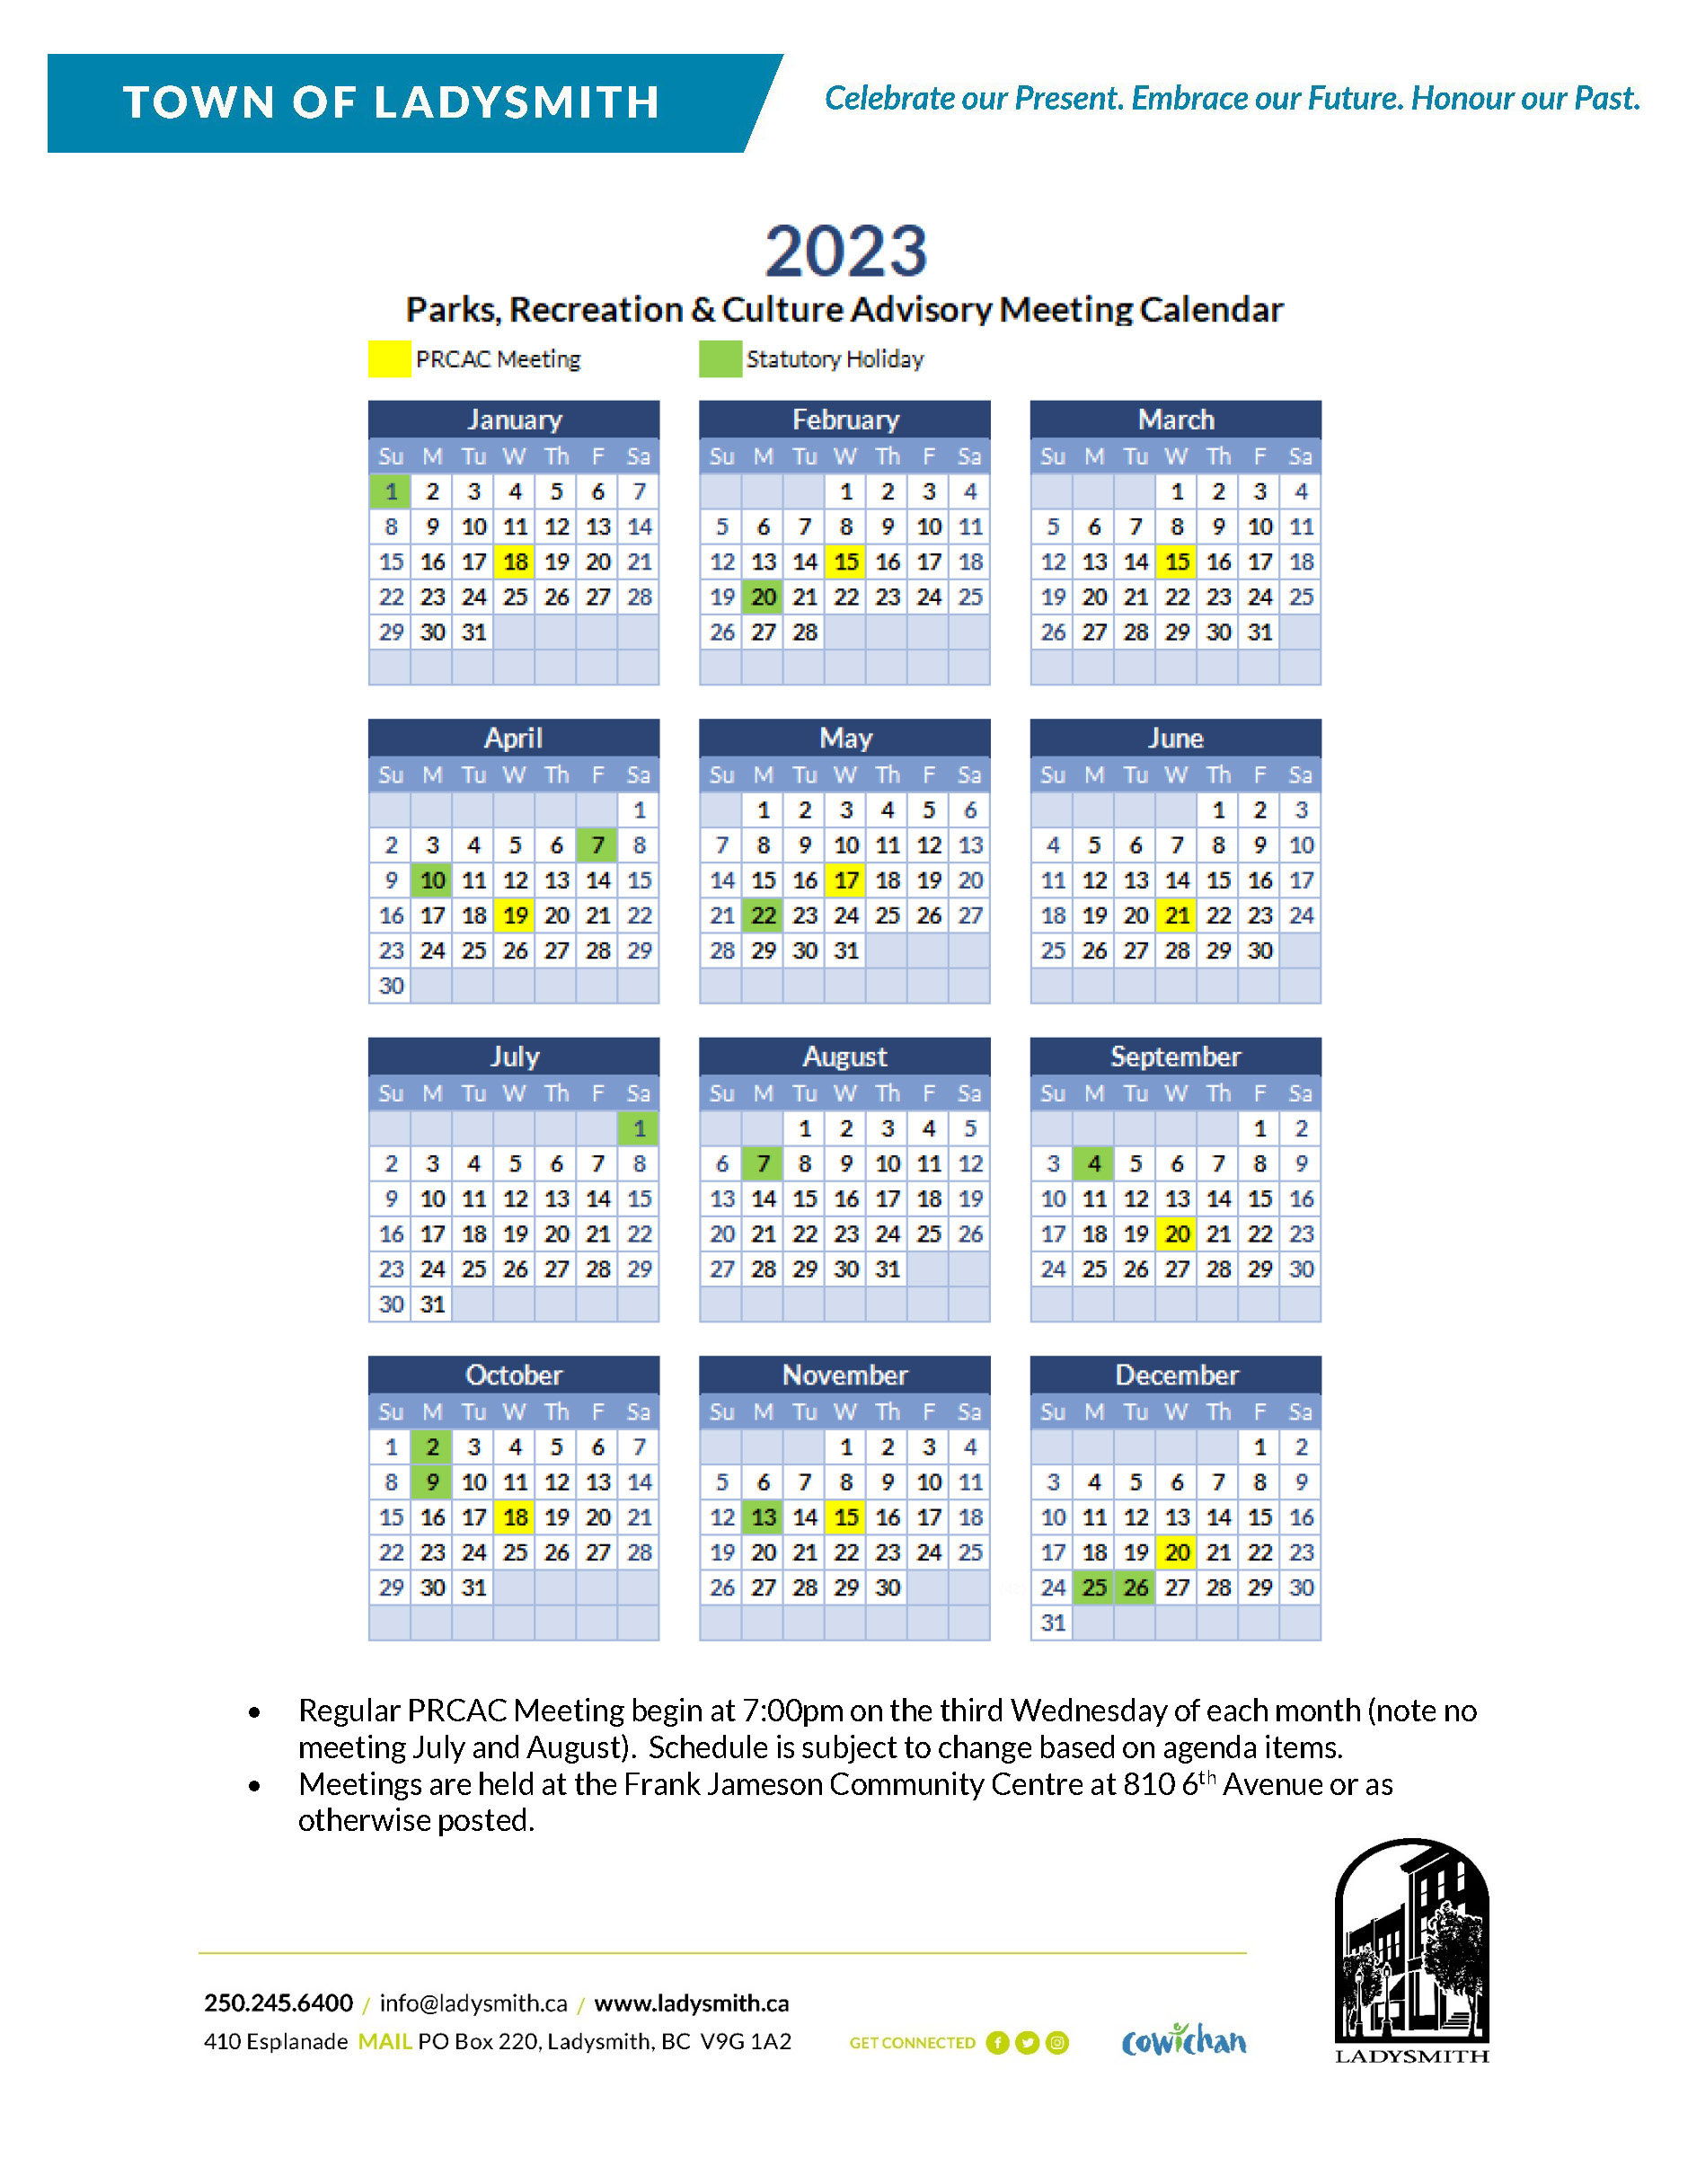 PRCAC Calendar Schedule- 2023